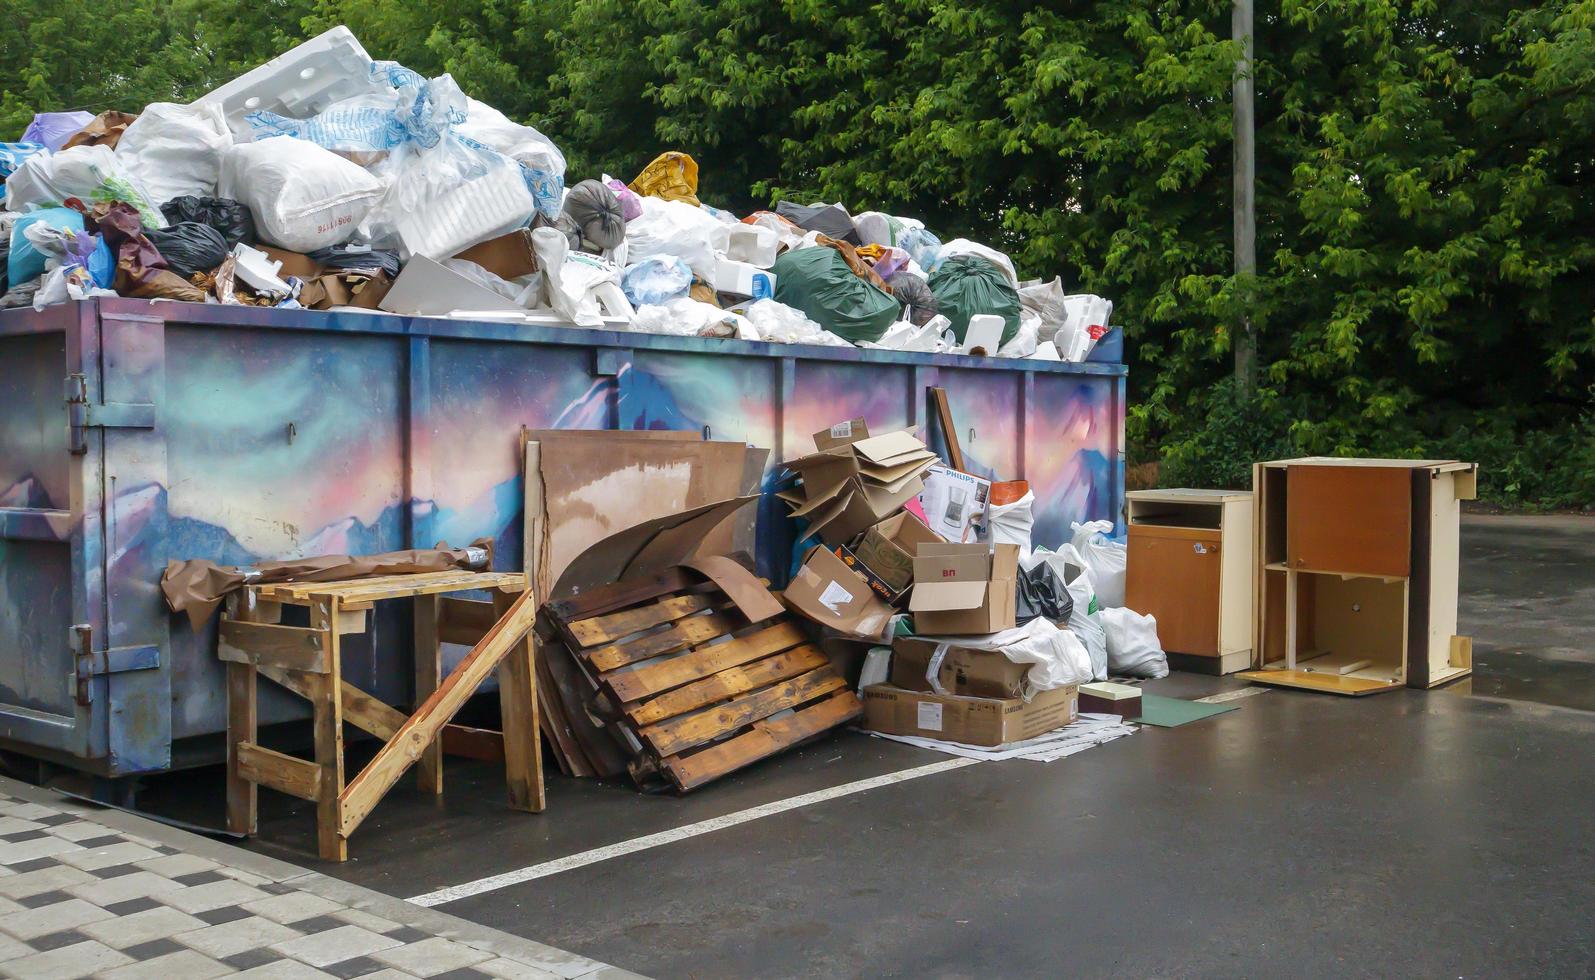 bidone della spazzatura industriale blu durevole in metallo per la spazzatura all'aperto in cantiere. cestino grande per rifiuti domestici o industriali. un mucchio di rifiuti. ucraina, kiev - 09 agosto 2021. foto